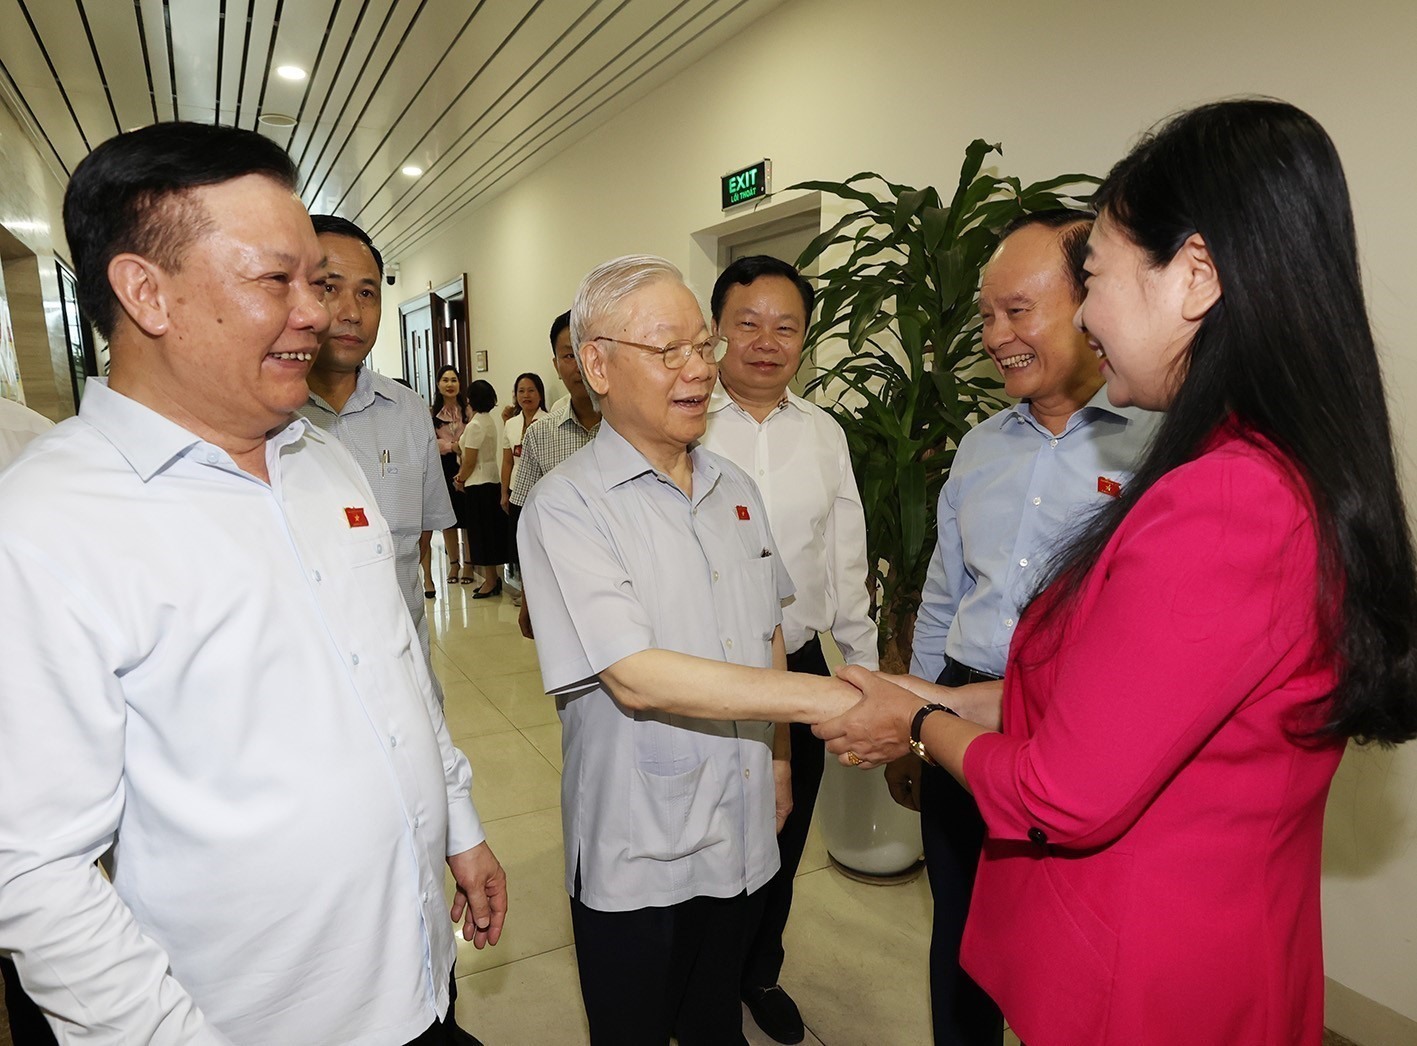 Tổng Bí thư Nguyễn Phú Trọng cùng các đại biểu tiếp xúc cử tri sau kỳ họp. Ảnh: Trí Dũng